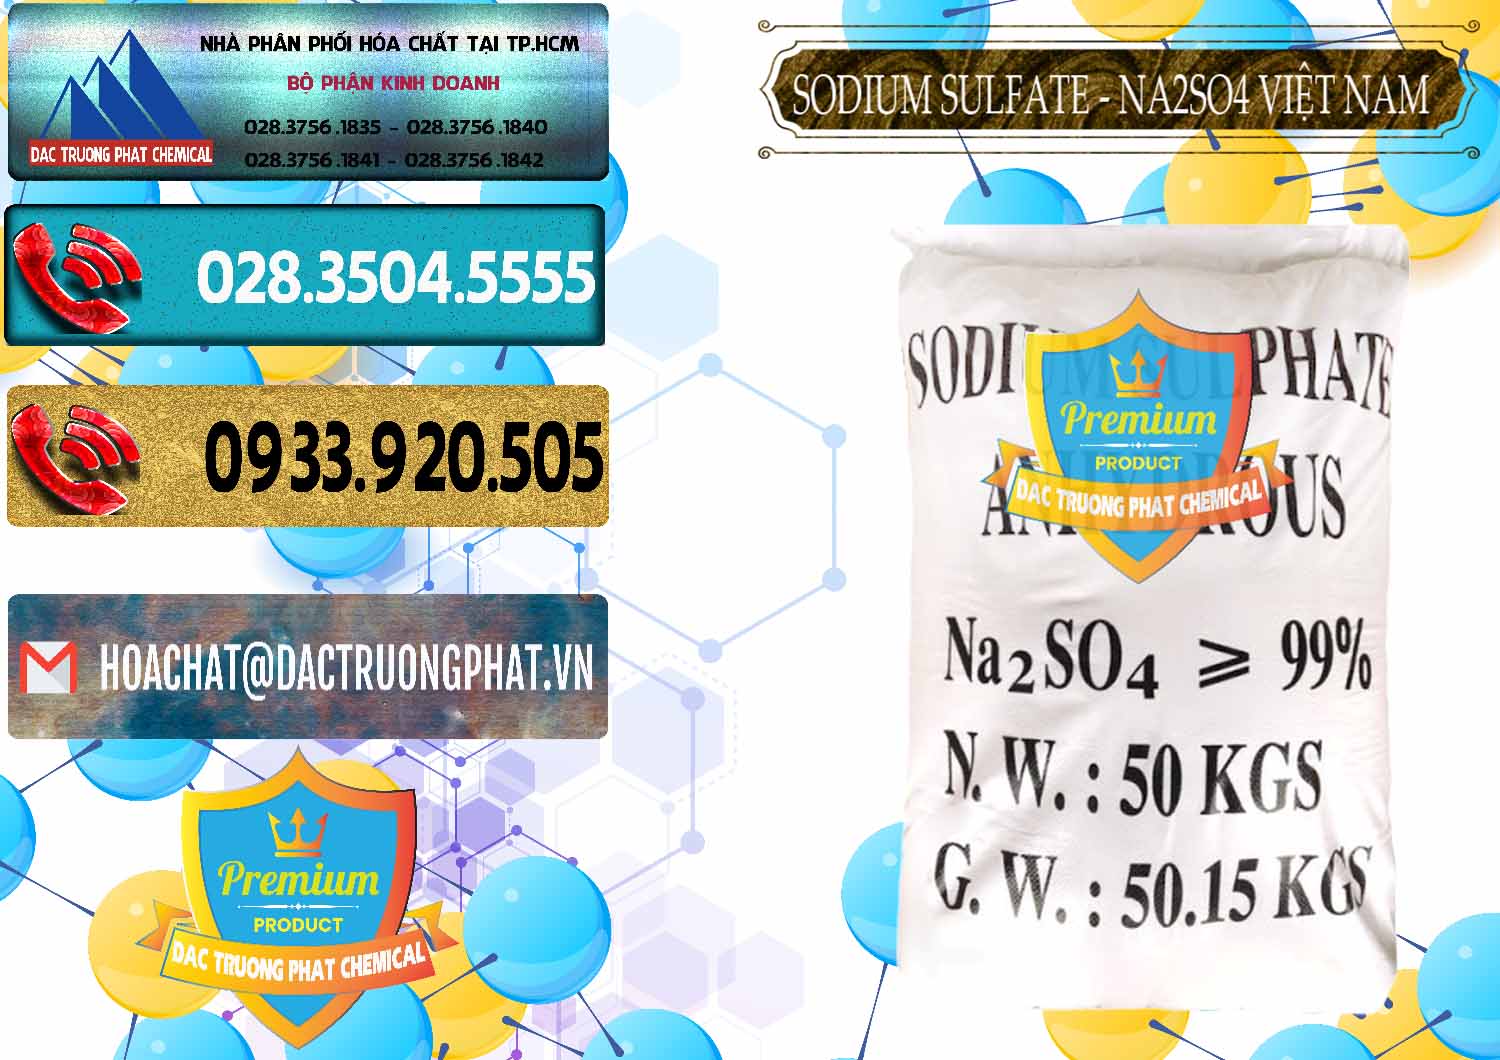 Nơi chuyên cung ứng ( bán ) Sodium Sulphate - Muối Sunfat Na2SO4 Việt Nam - 0355 - Cty phân phối và cung cấp hóa chất tại TP.HCM - hoachatdetnhuom.com